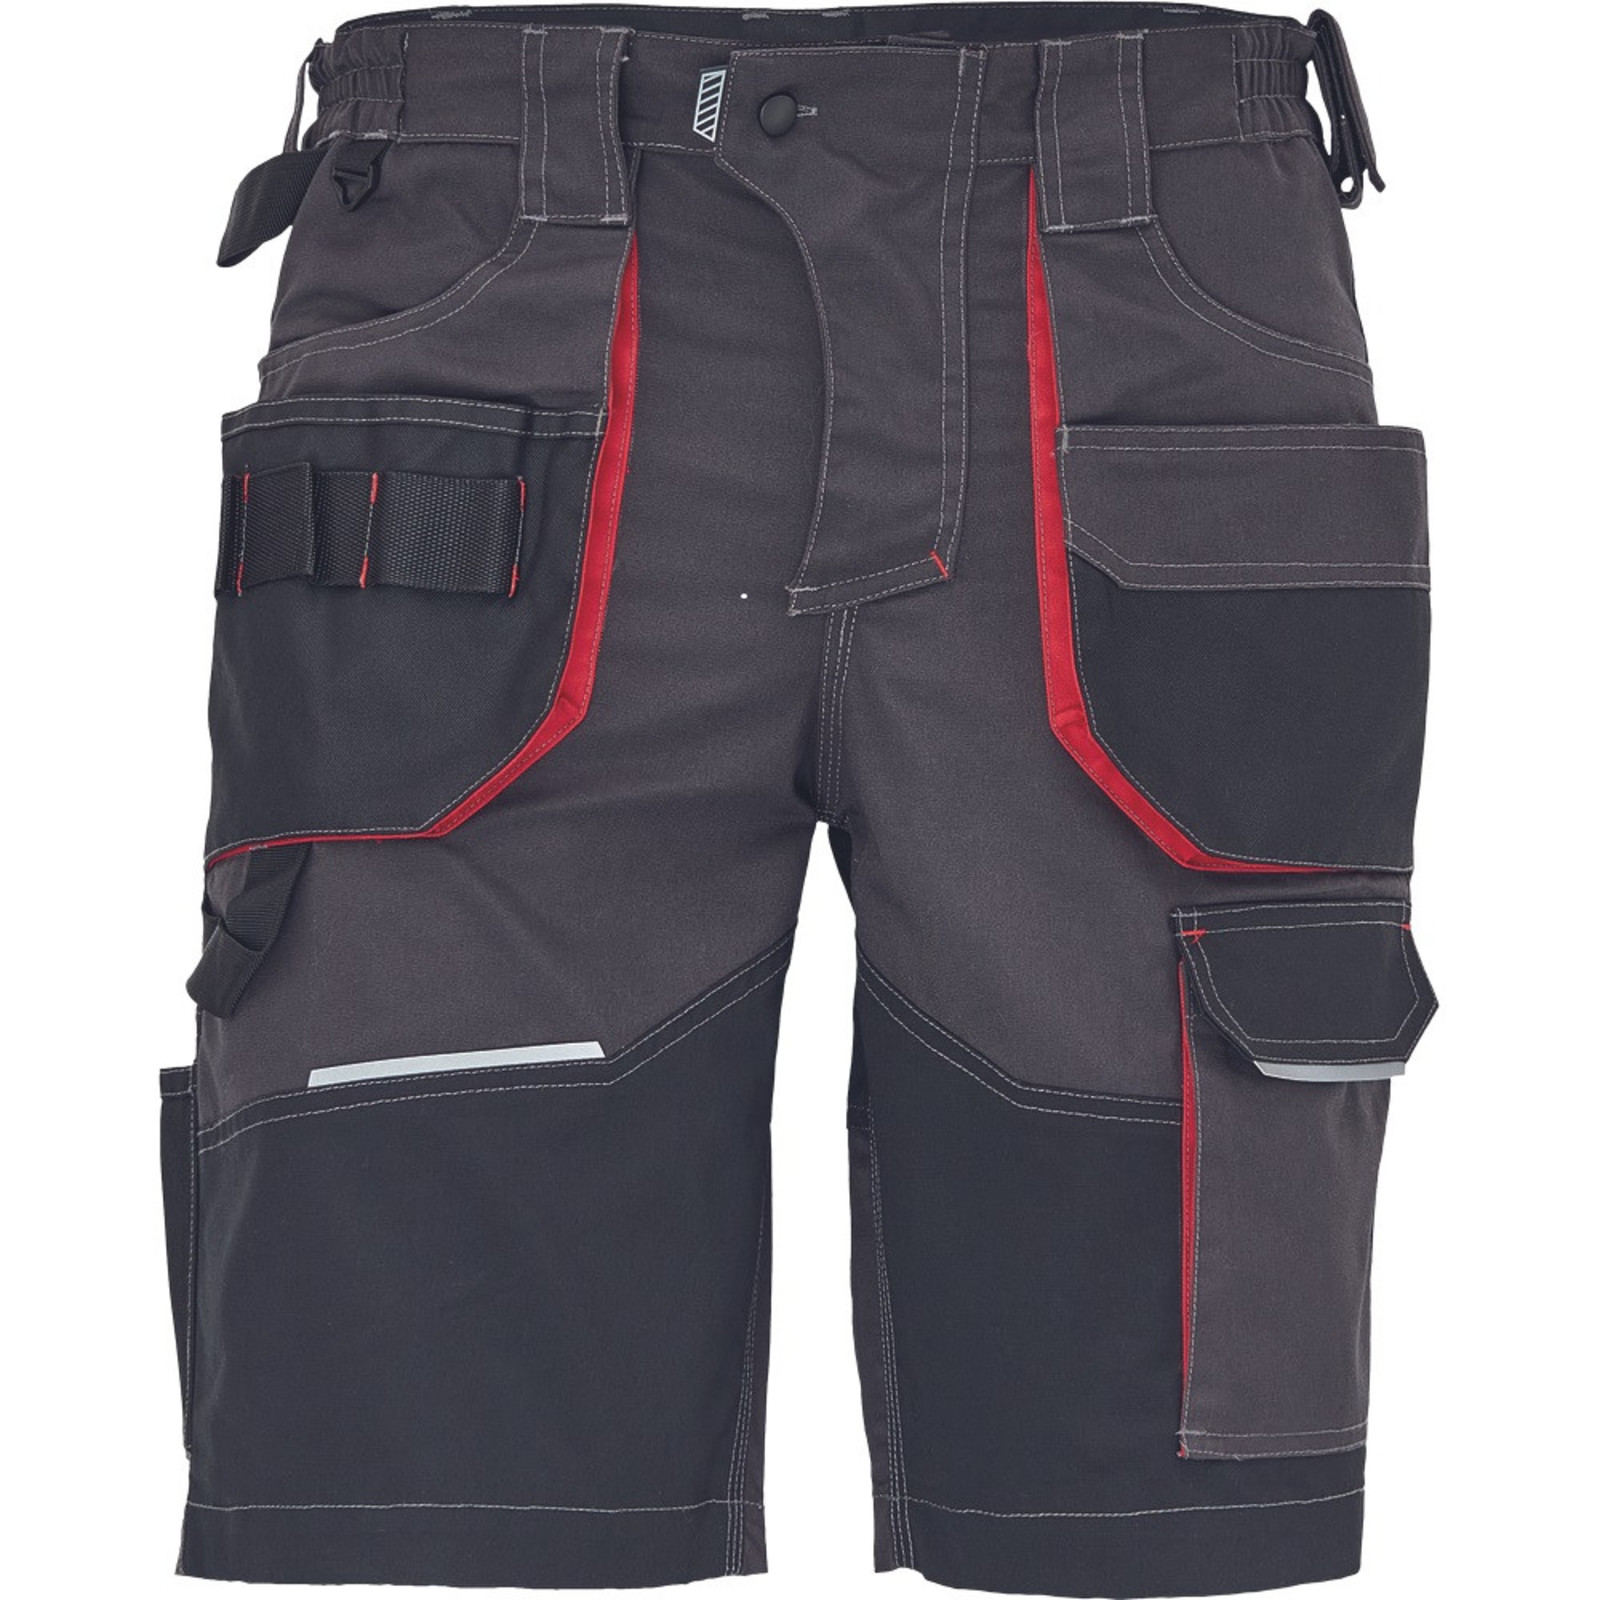 Pánske pracovné šortky SafeWorker Reusel - veľkosť: 50, farba: antracit/červená